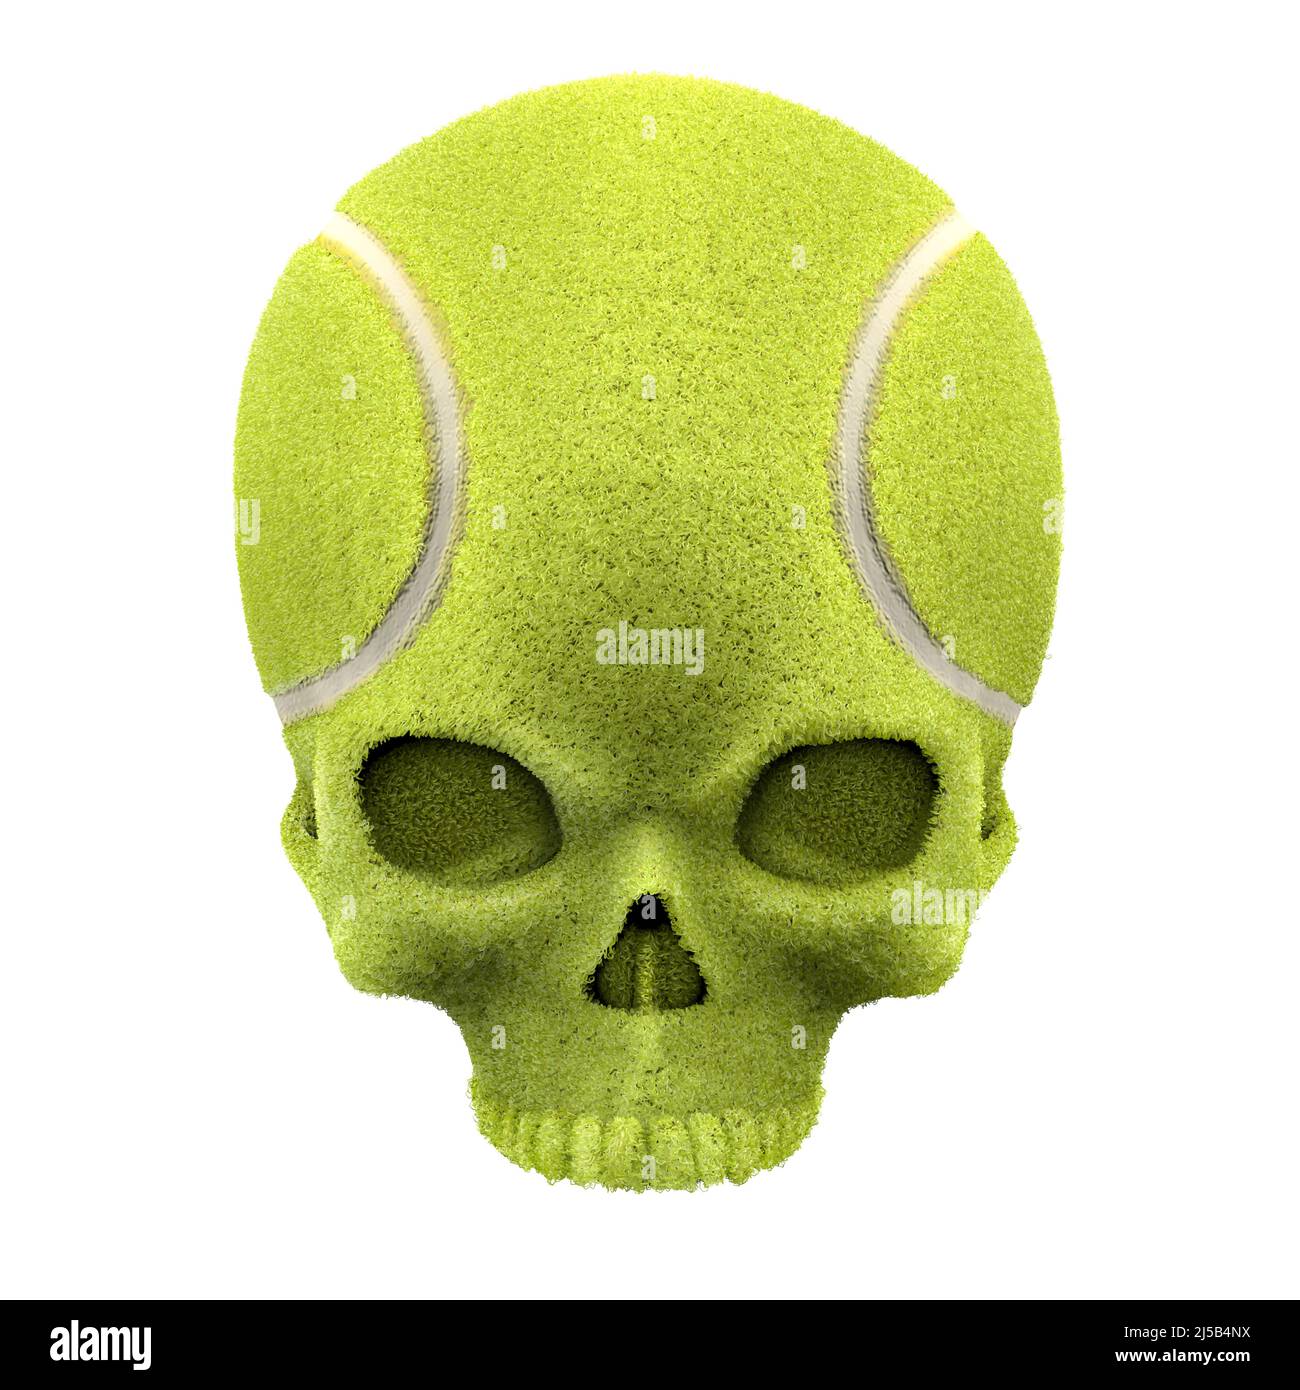 Tennisball Schädel - 3D Illustration von grünen Ball geformten menschlichen Schädel isoliert auf weißem Studio-Hintergrund Stockfoto